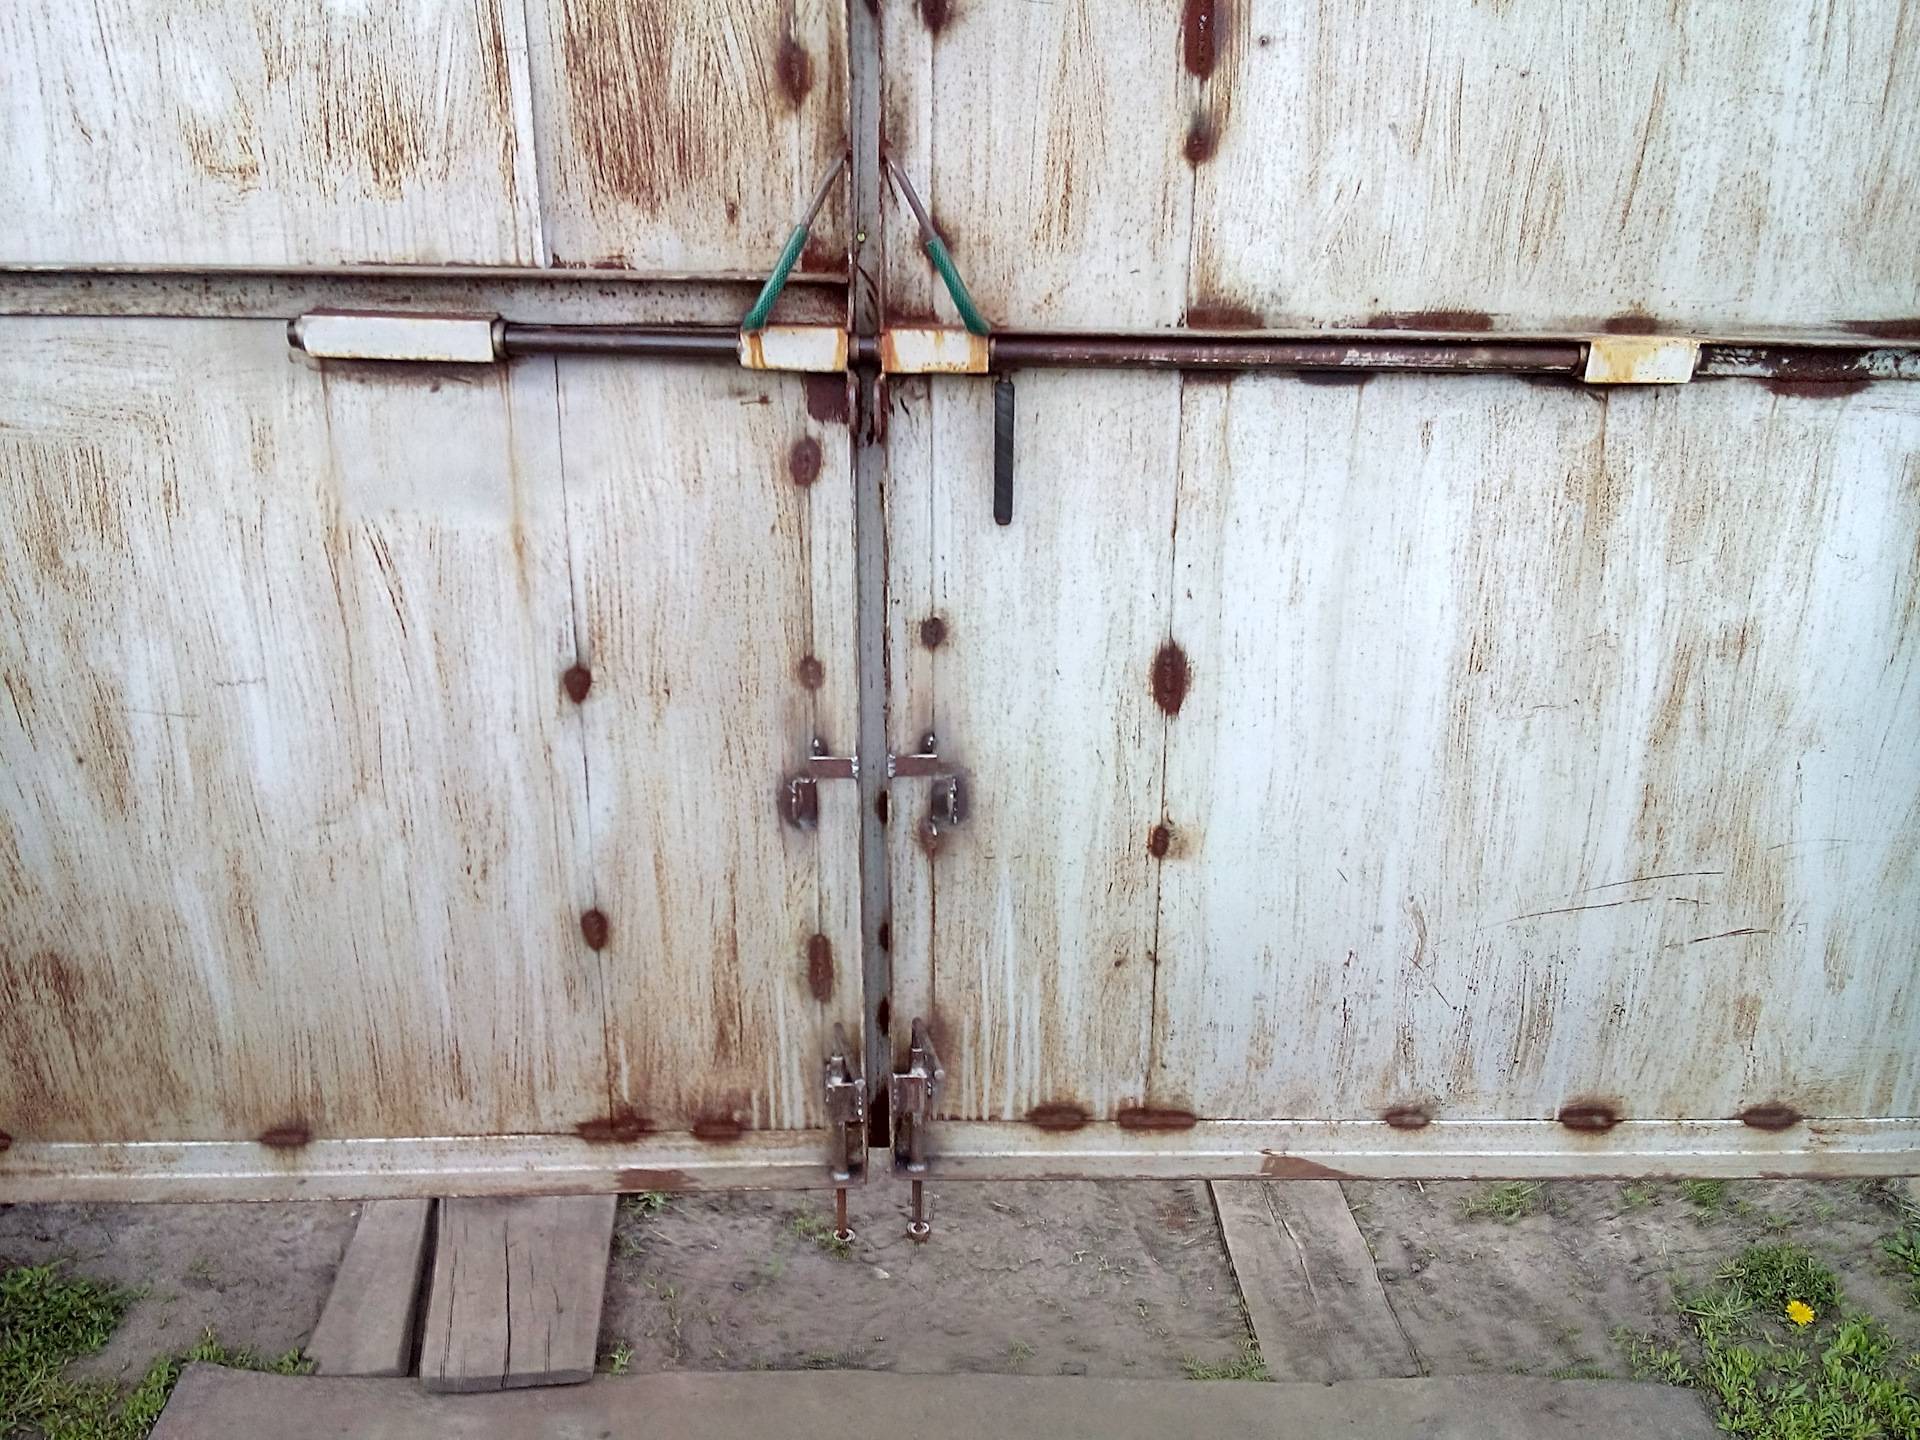 Засов на ворота своими руками: как сделать для распашных гаражных конструкций, фото и видео